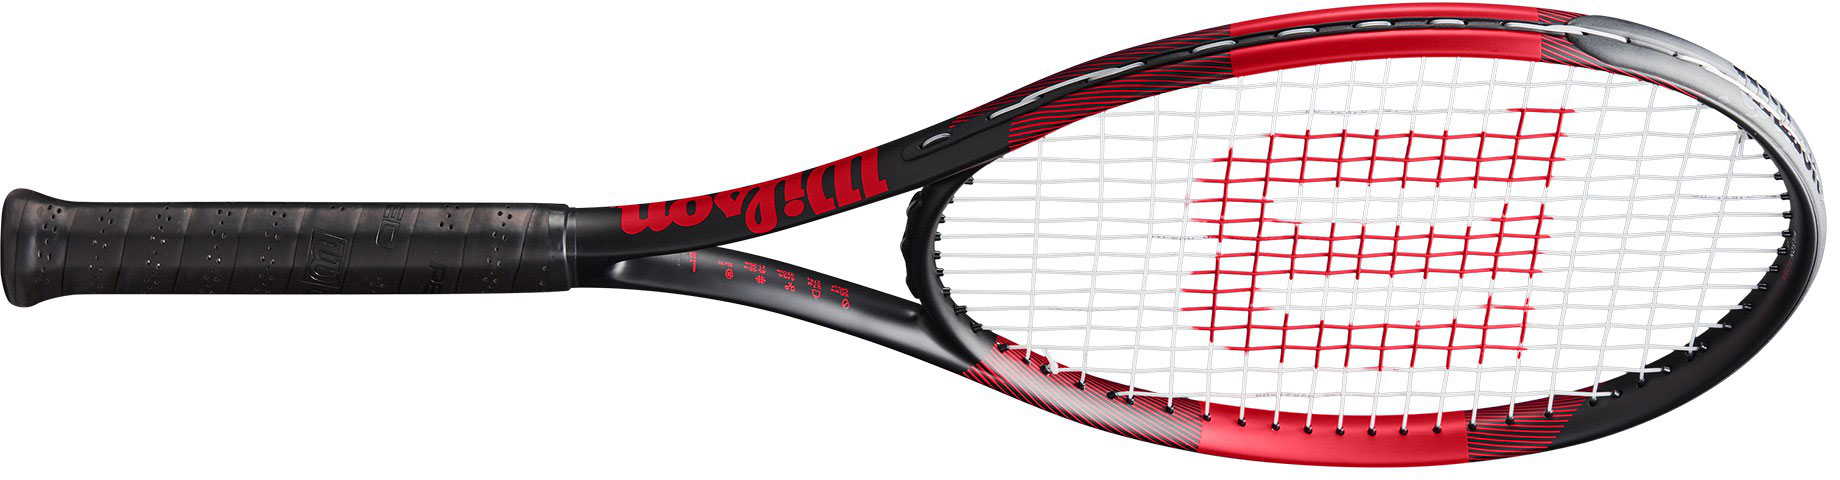 Recreational tennis racquet